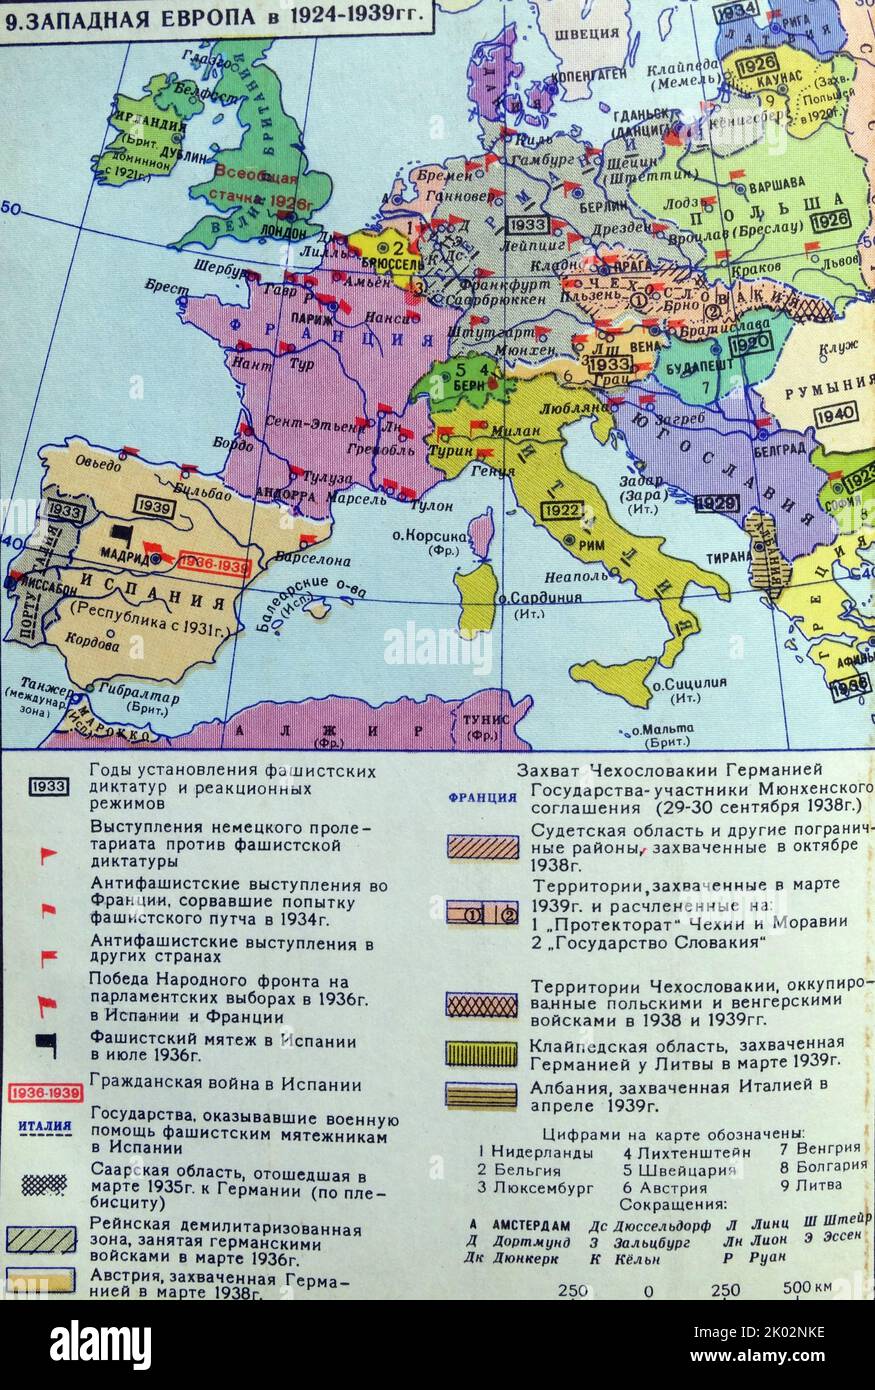 Mappa russa sovietica dell'Europa occidentale nel 1924-1939. Foto Stock